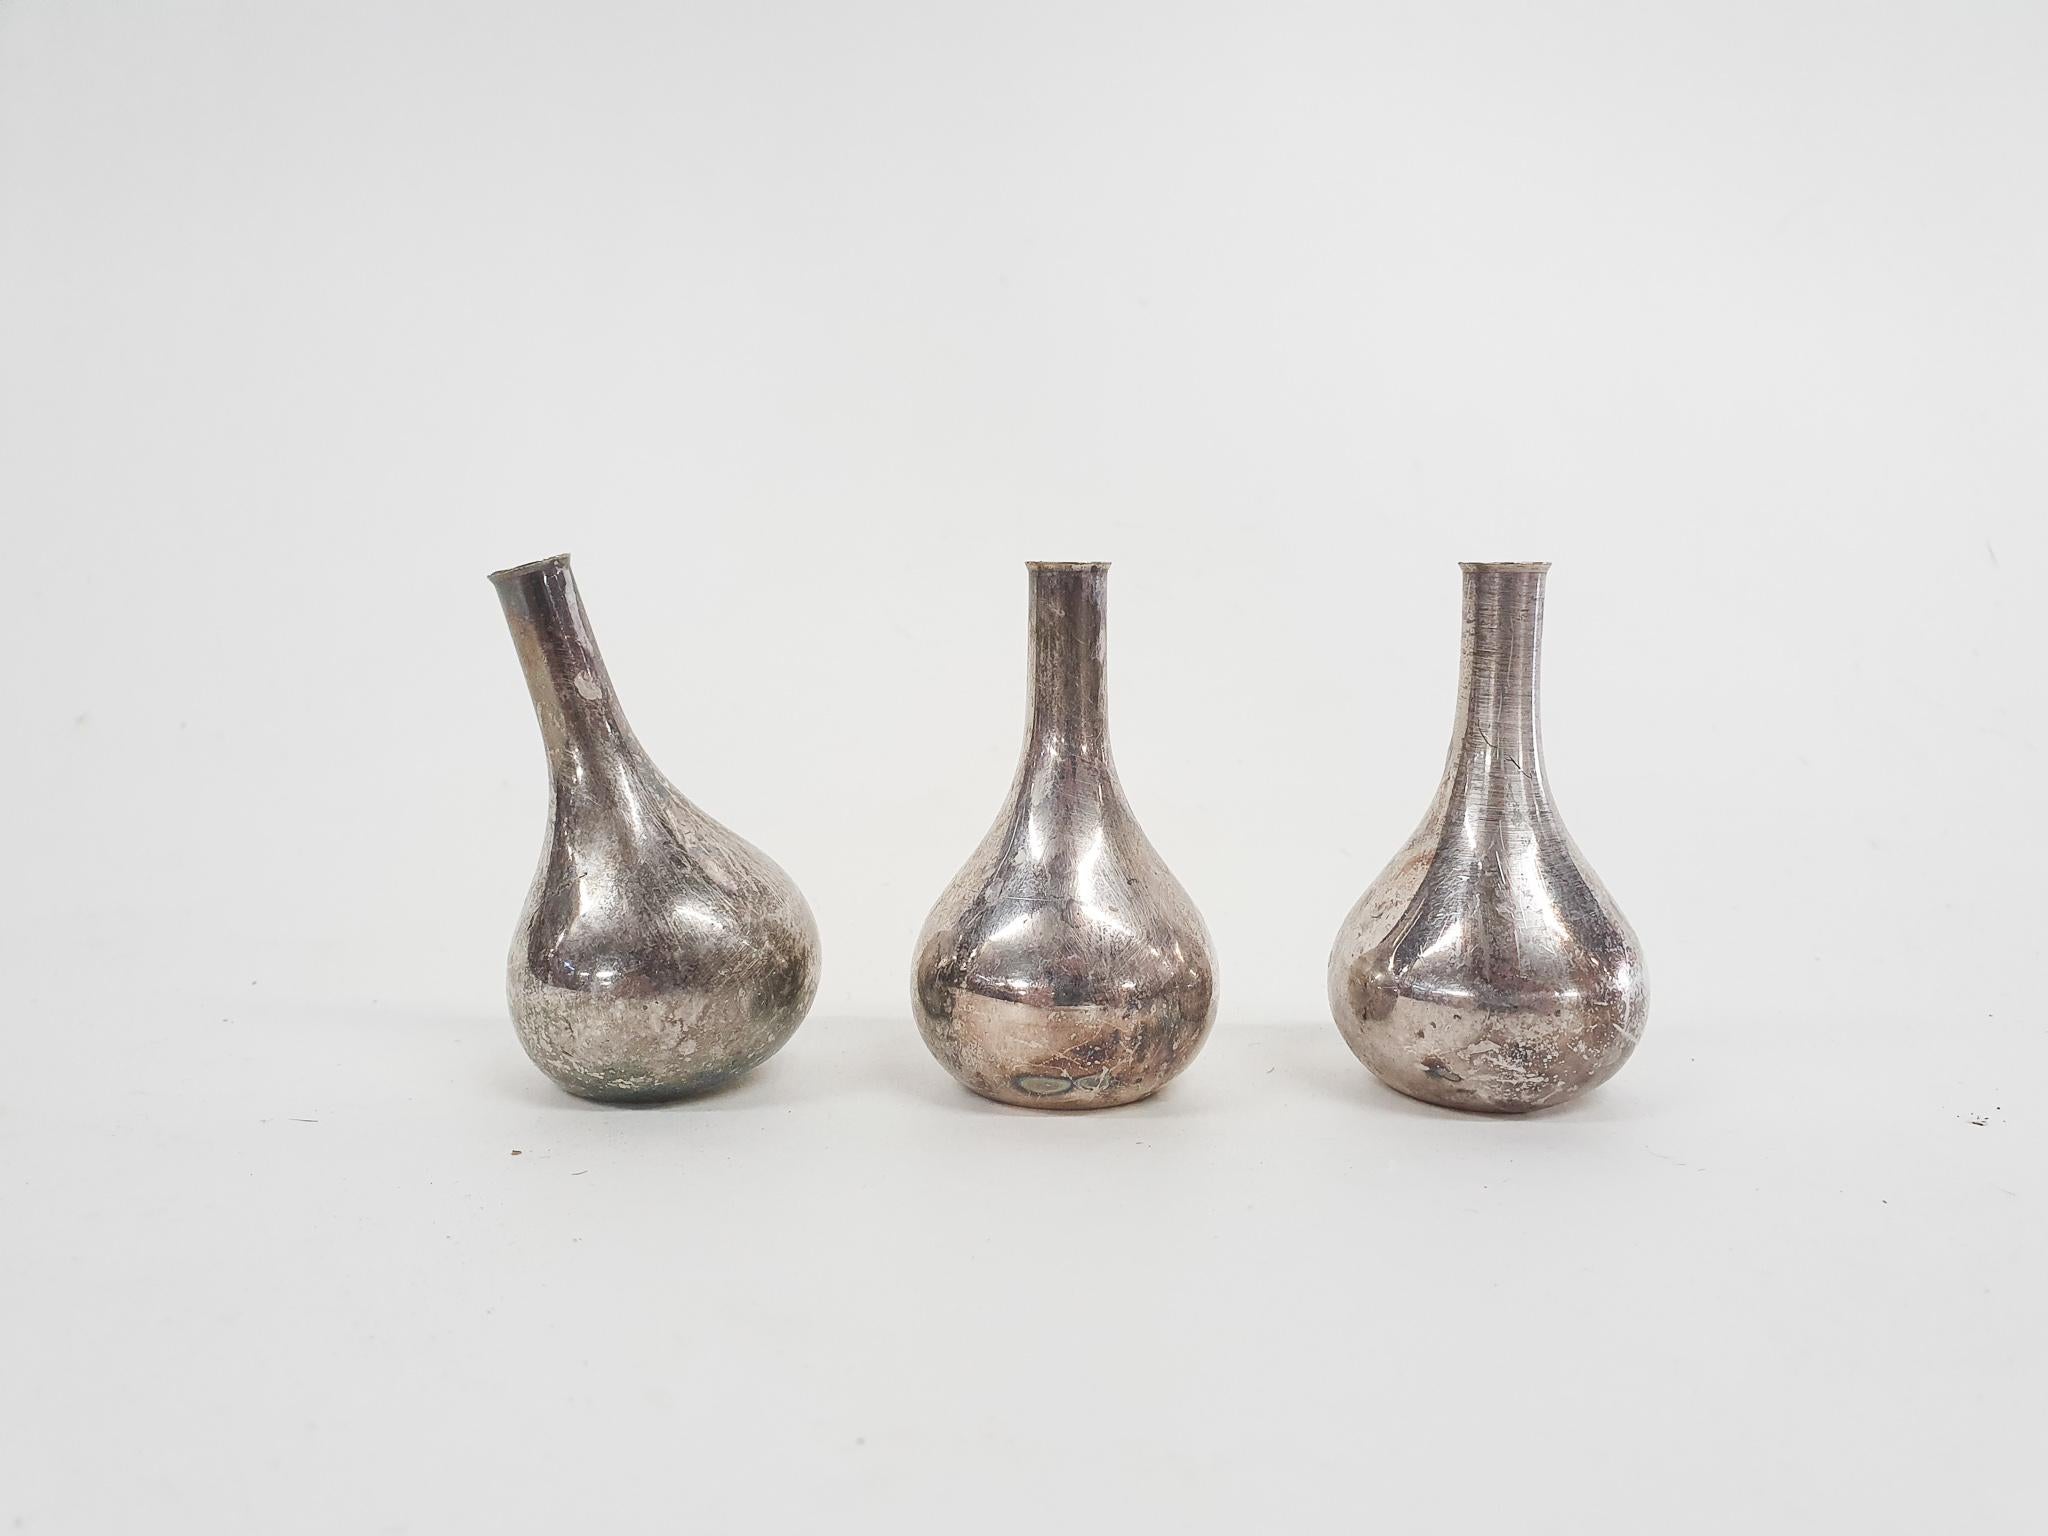 Drei kleine silberne Kerzenhalter, entworfen von Jens H. Quistgaard für Dansk Design. 2 haben einen geraden Hals, einer hat einen schrägen Hals.
Markiert am Boden